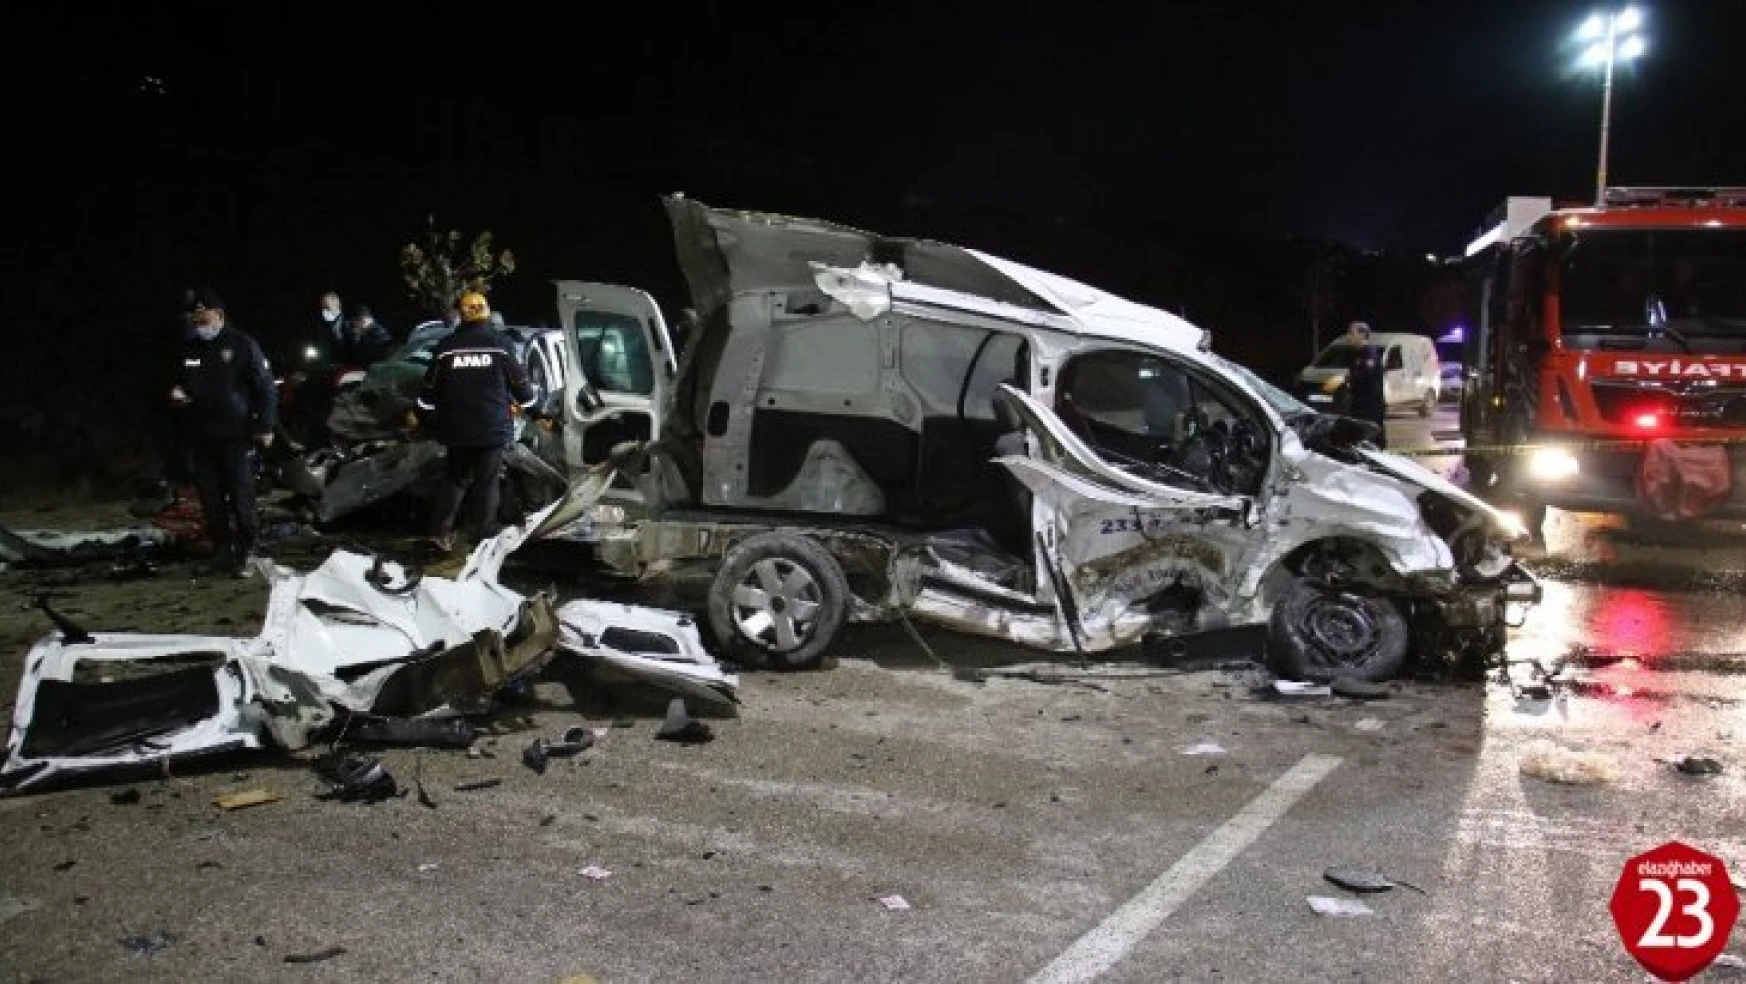 Elazığ'daki feci kazada ölü sayısı 4'e yükseldi